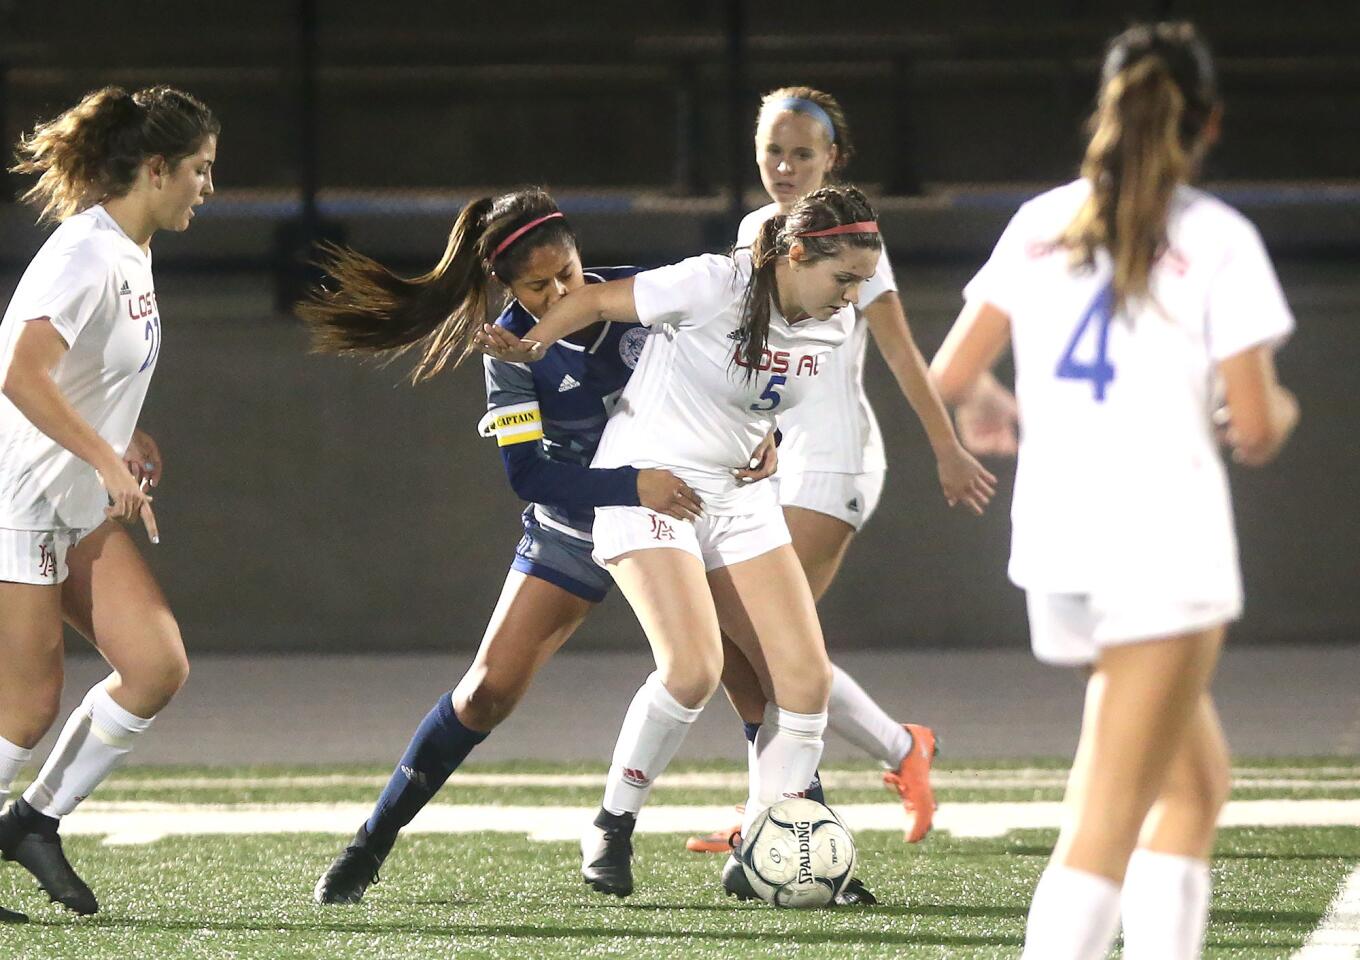 Photo Gallery: Newport Harbor vs. Los Alamitos in girls’ soccer